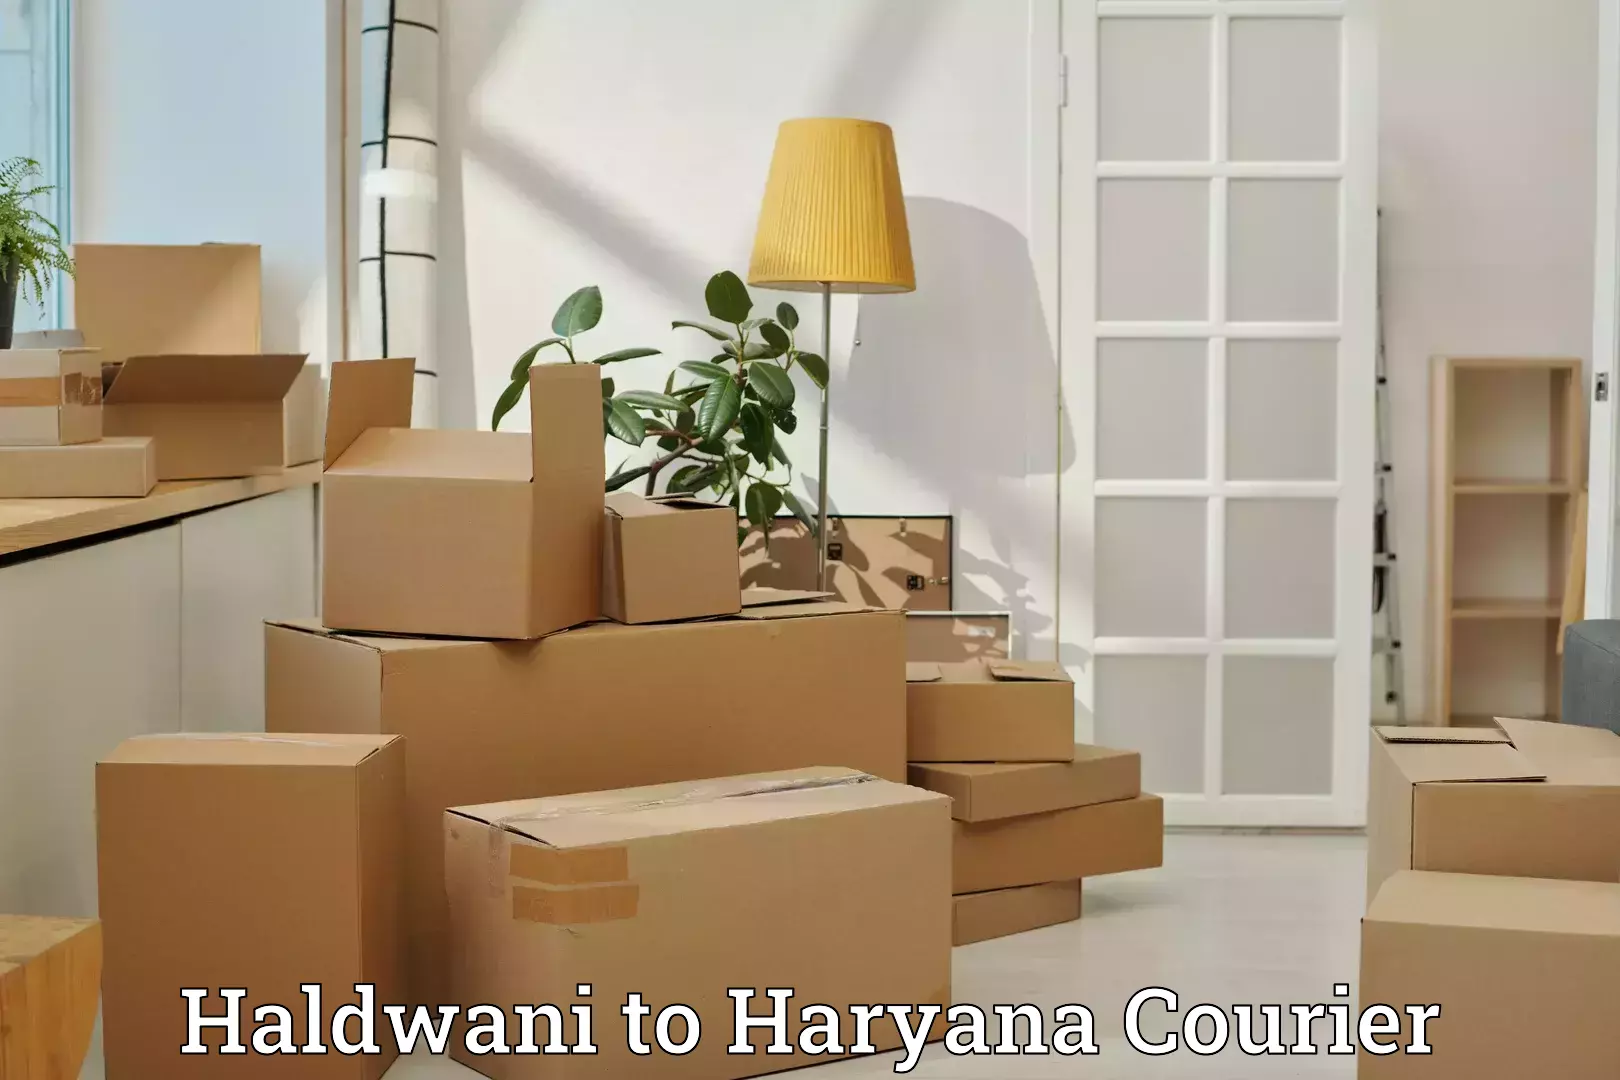 Holiday season luggage delivery Haldwani to IIIT Sonepat